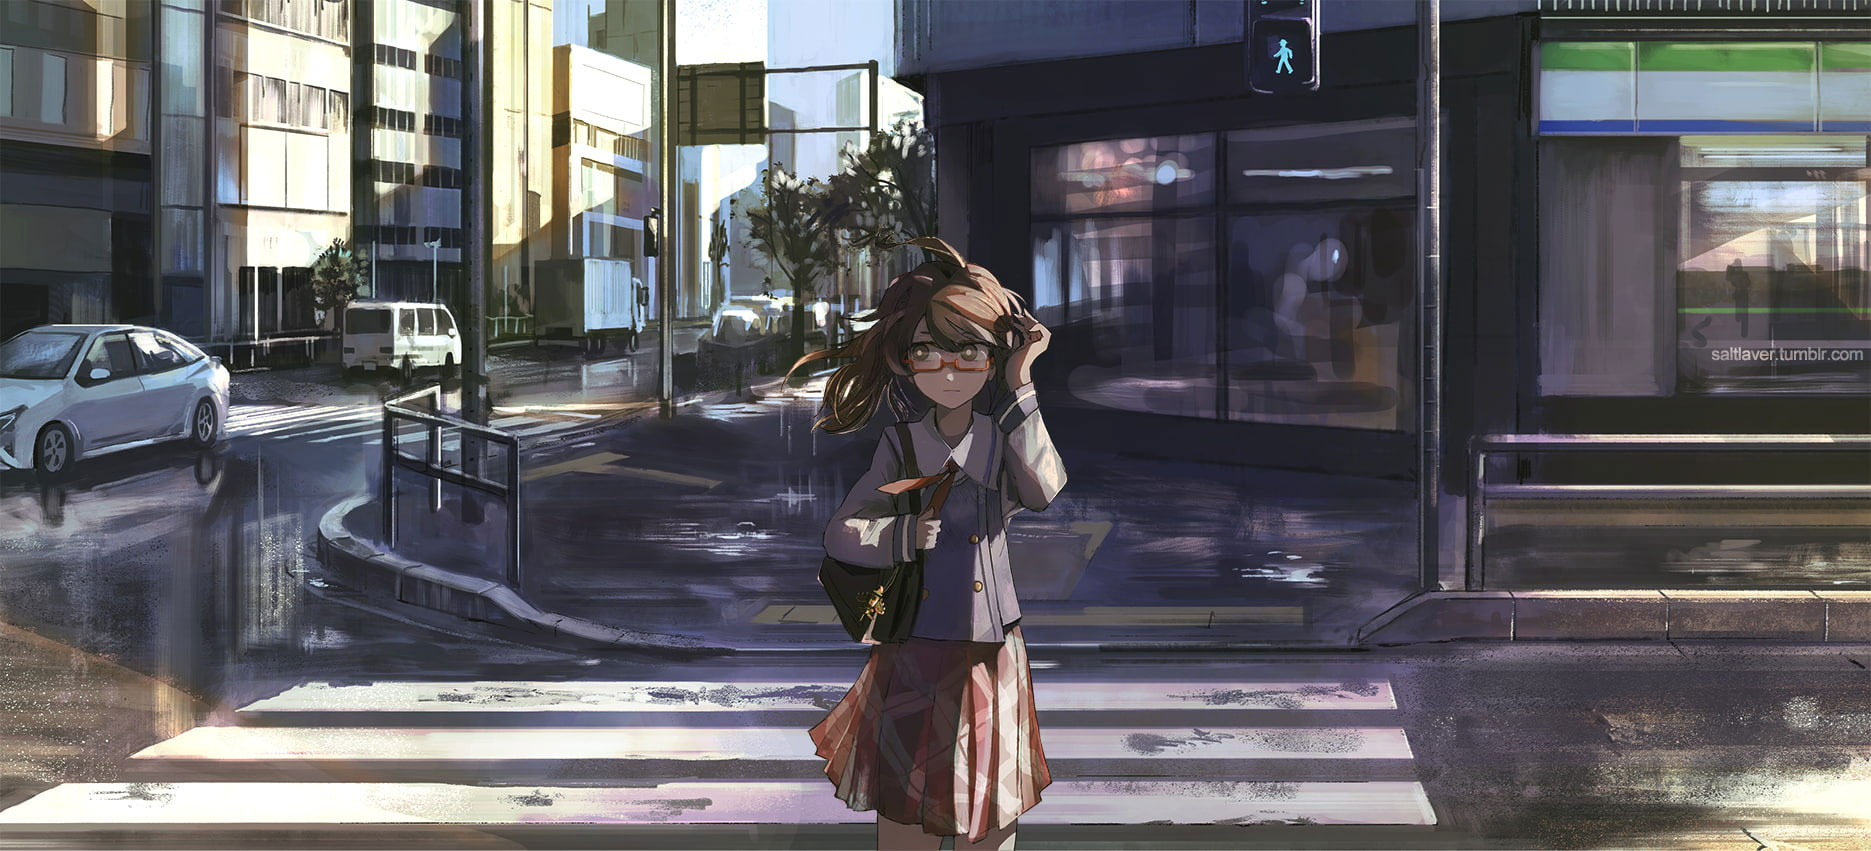 Wallpaper Anime, Anime Girls, City, Long Hair, Brunette